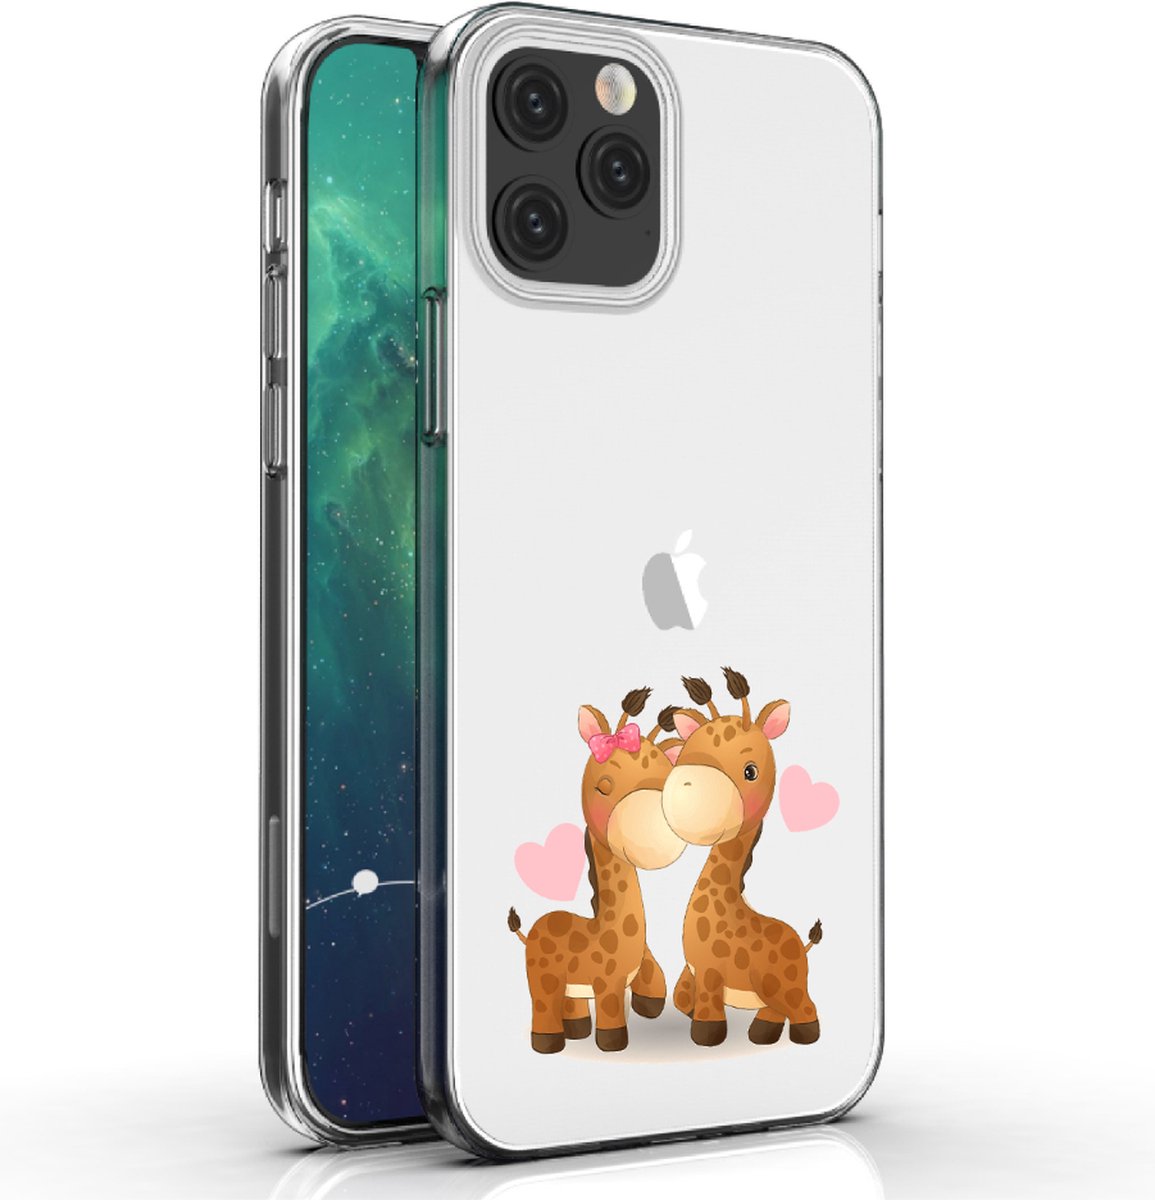 Apple Iphone 12 telefoonhoesje transparant siliconen hoesje - Giraffen